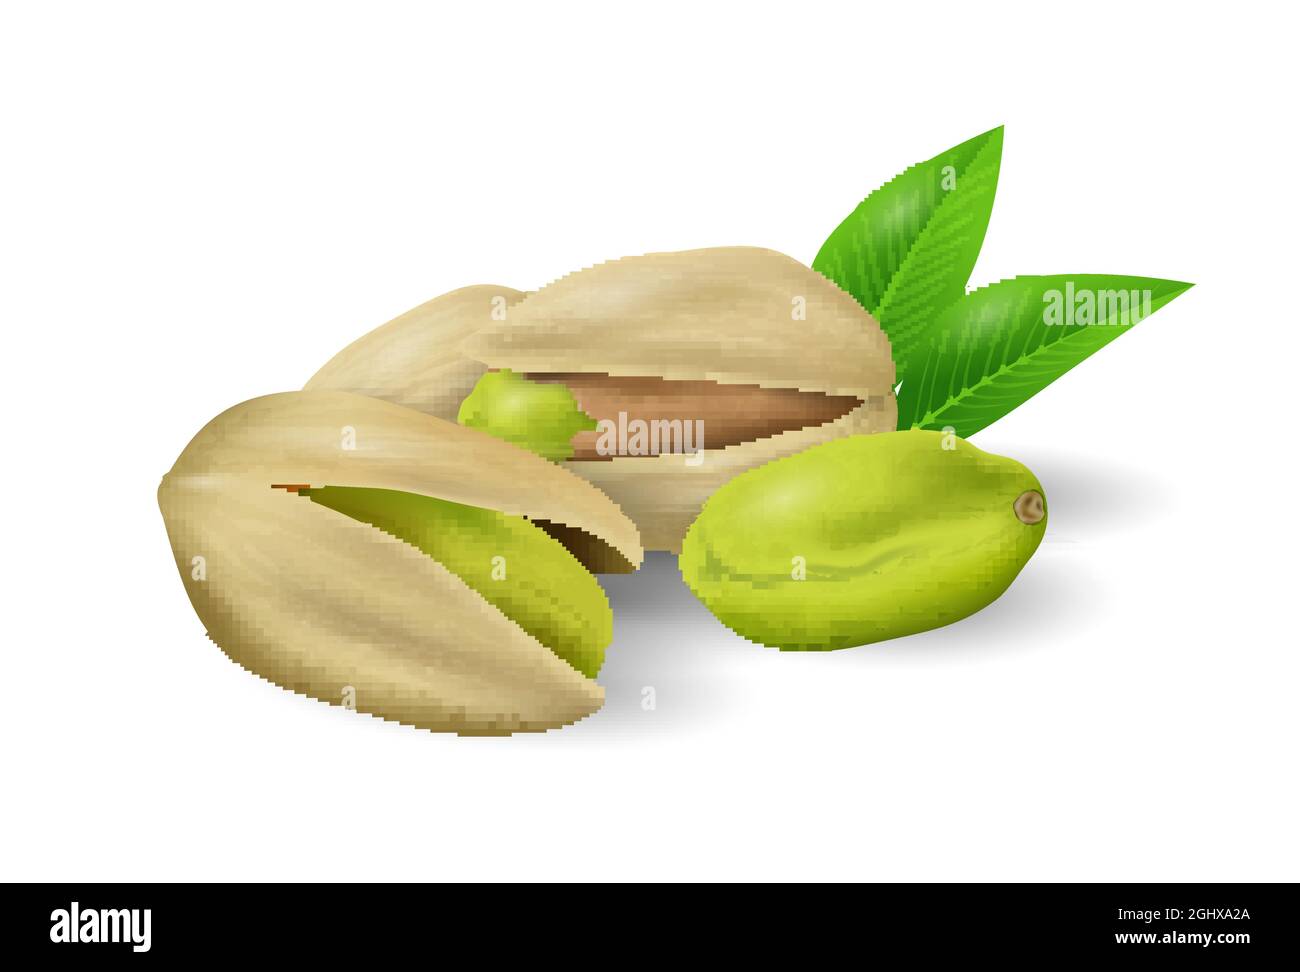 Pistazien-Nüsse mit grünen Blättern. Sammlung von Nüssen und Samen. Nahaufnahme der realistischen Vektorgrafik Stock Vektor